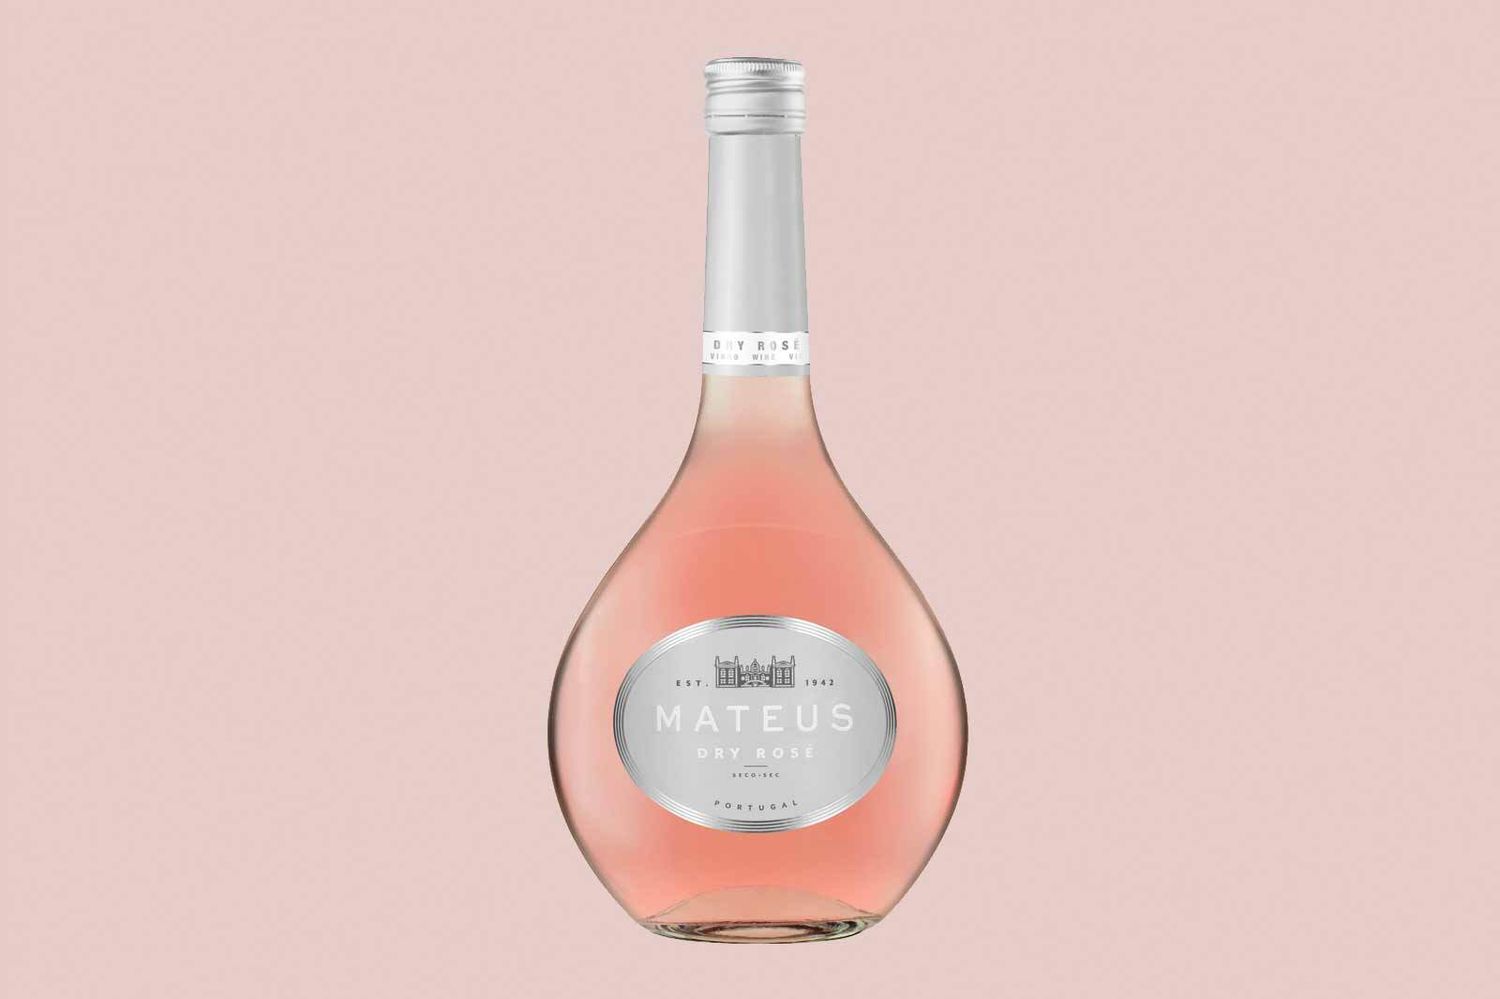 Bottle of Mateus rosé wine